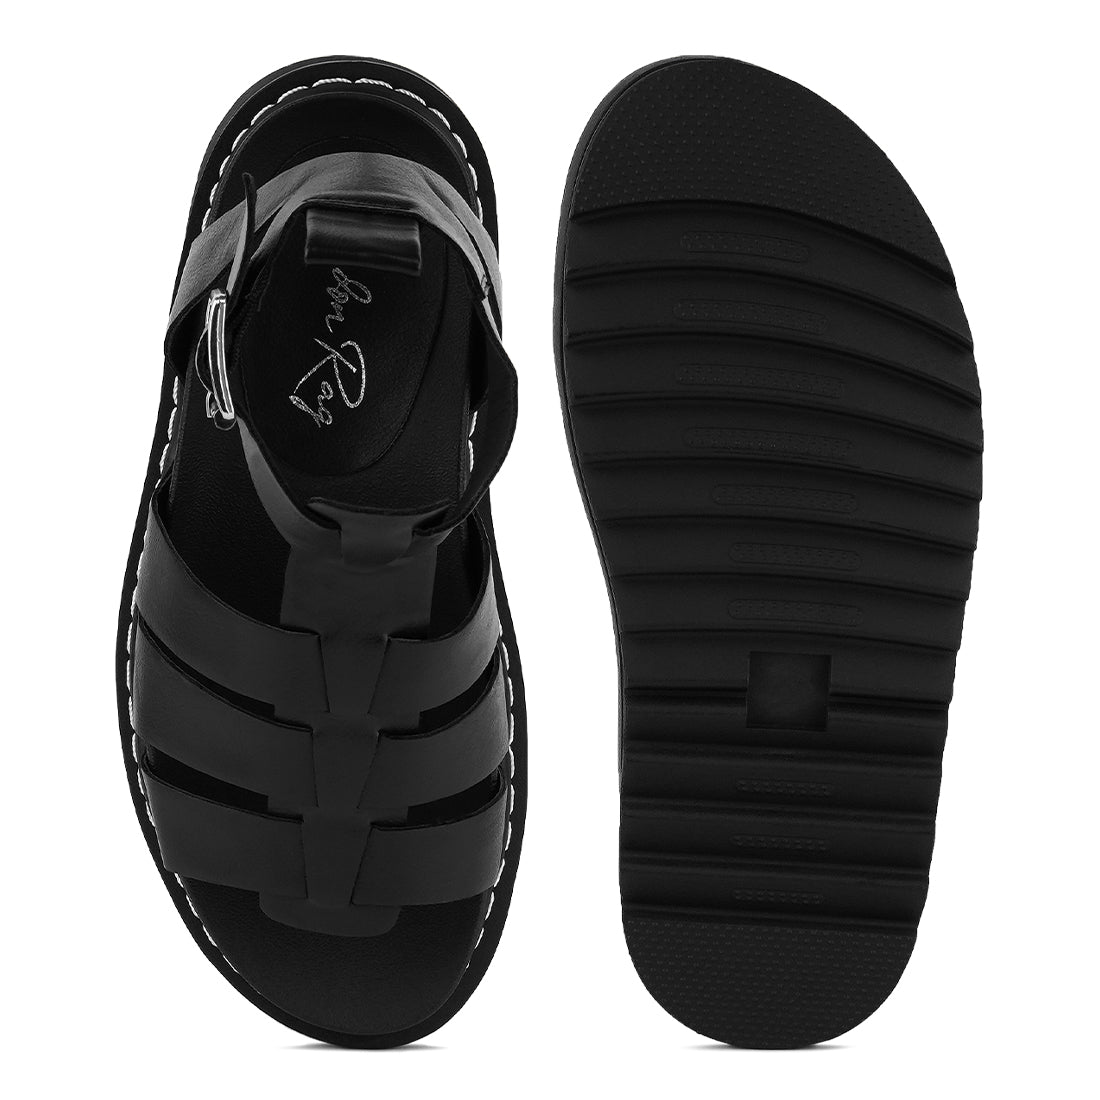 Black Vega Platform Gladiator Sandals